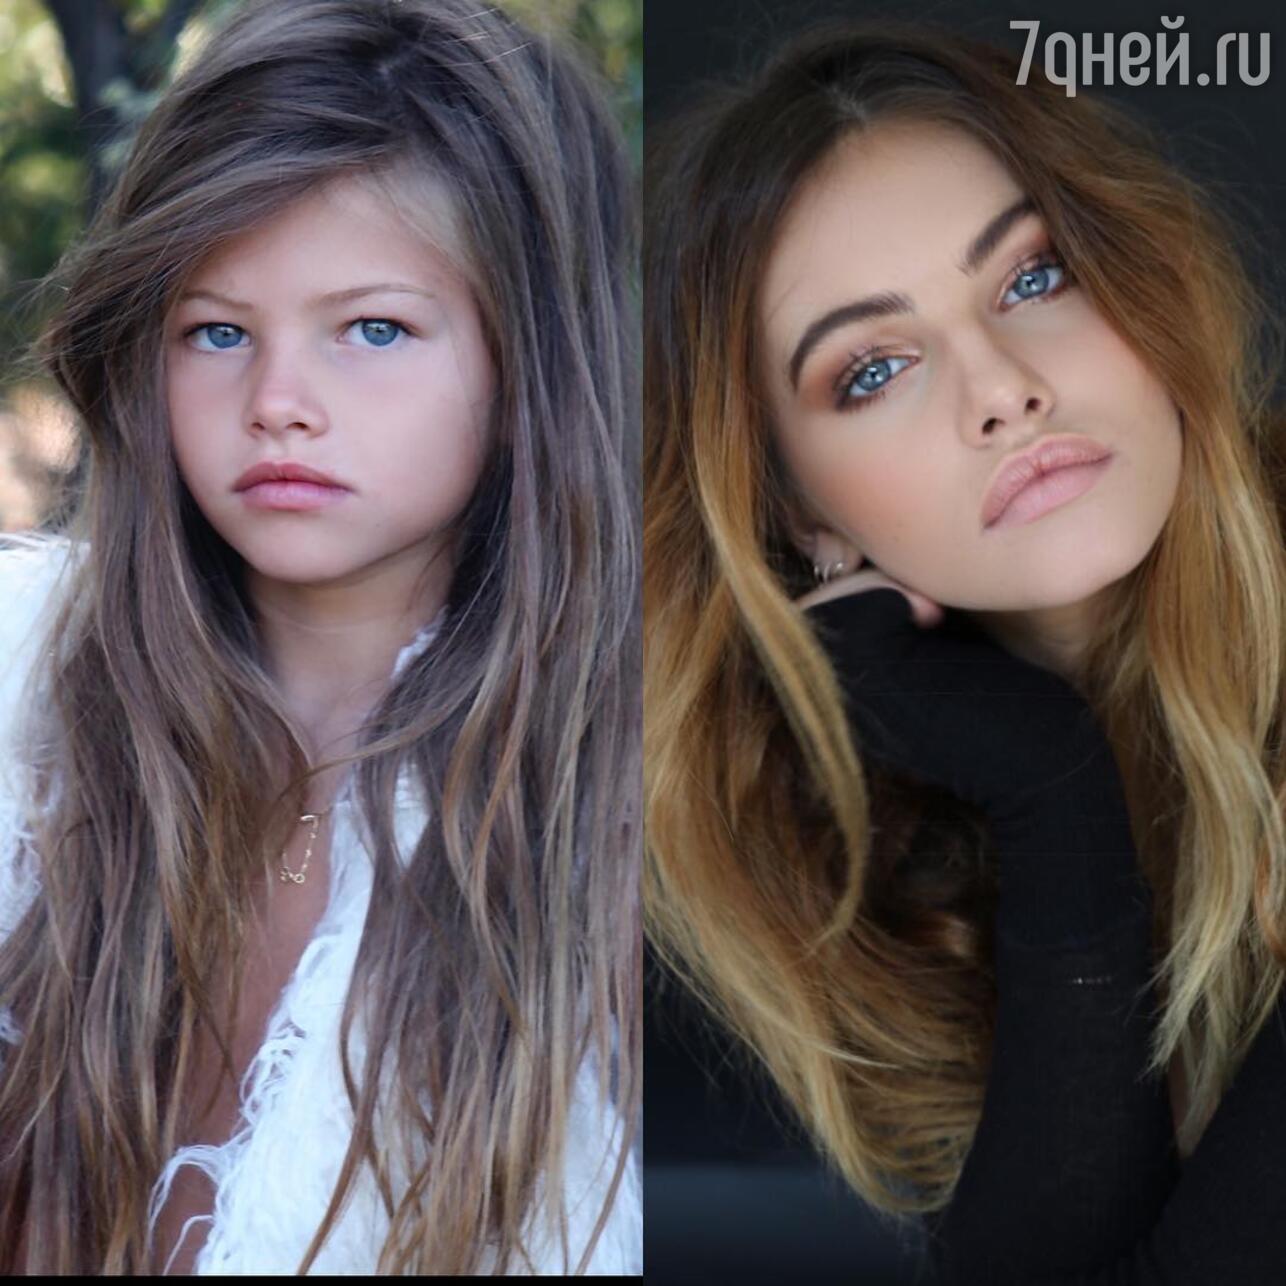 Девочка созрела! «Самая красивая девочка в мире» отметила 18-летие -  7Дней.ру